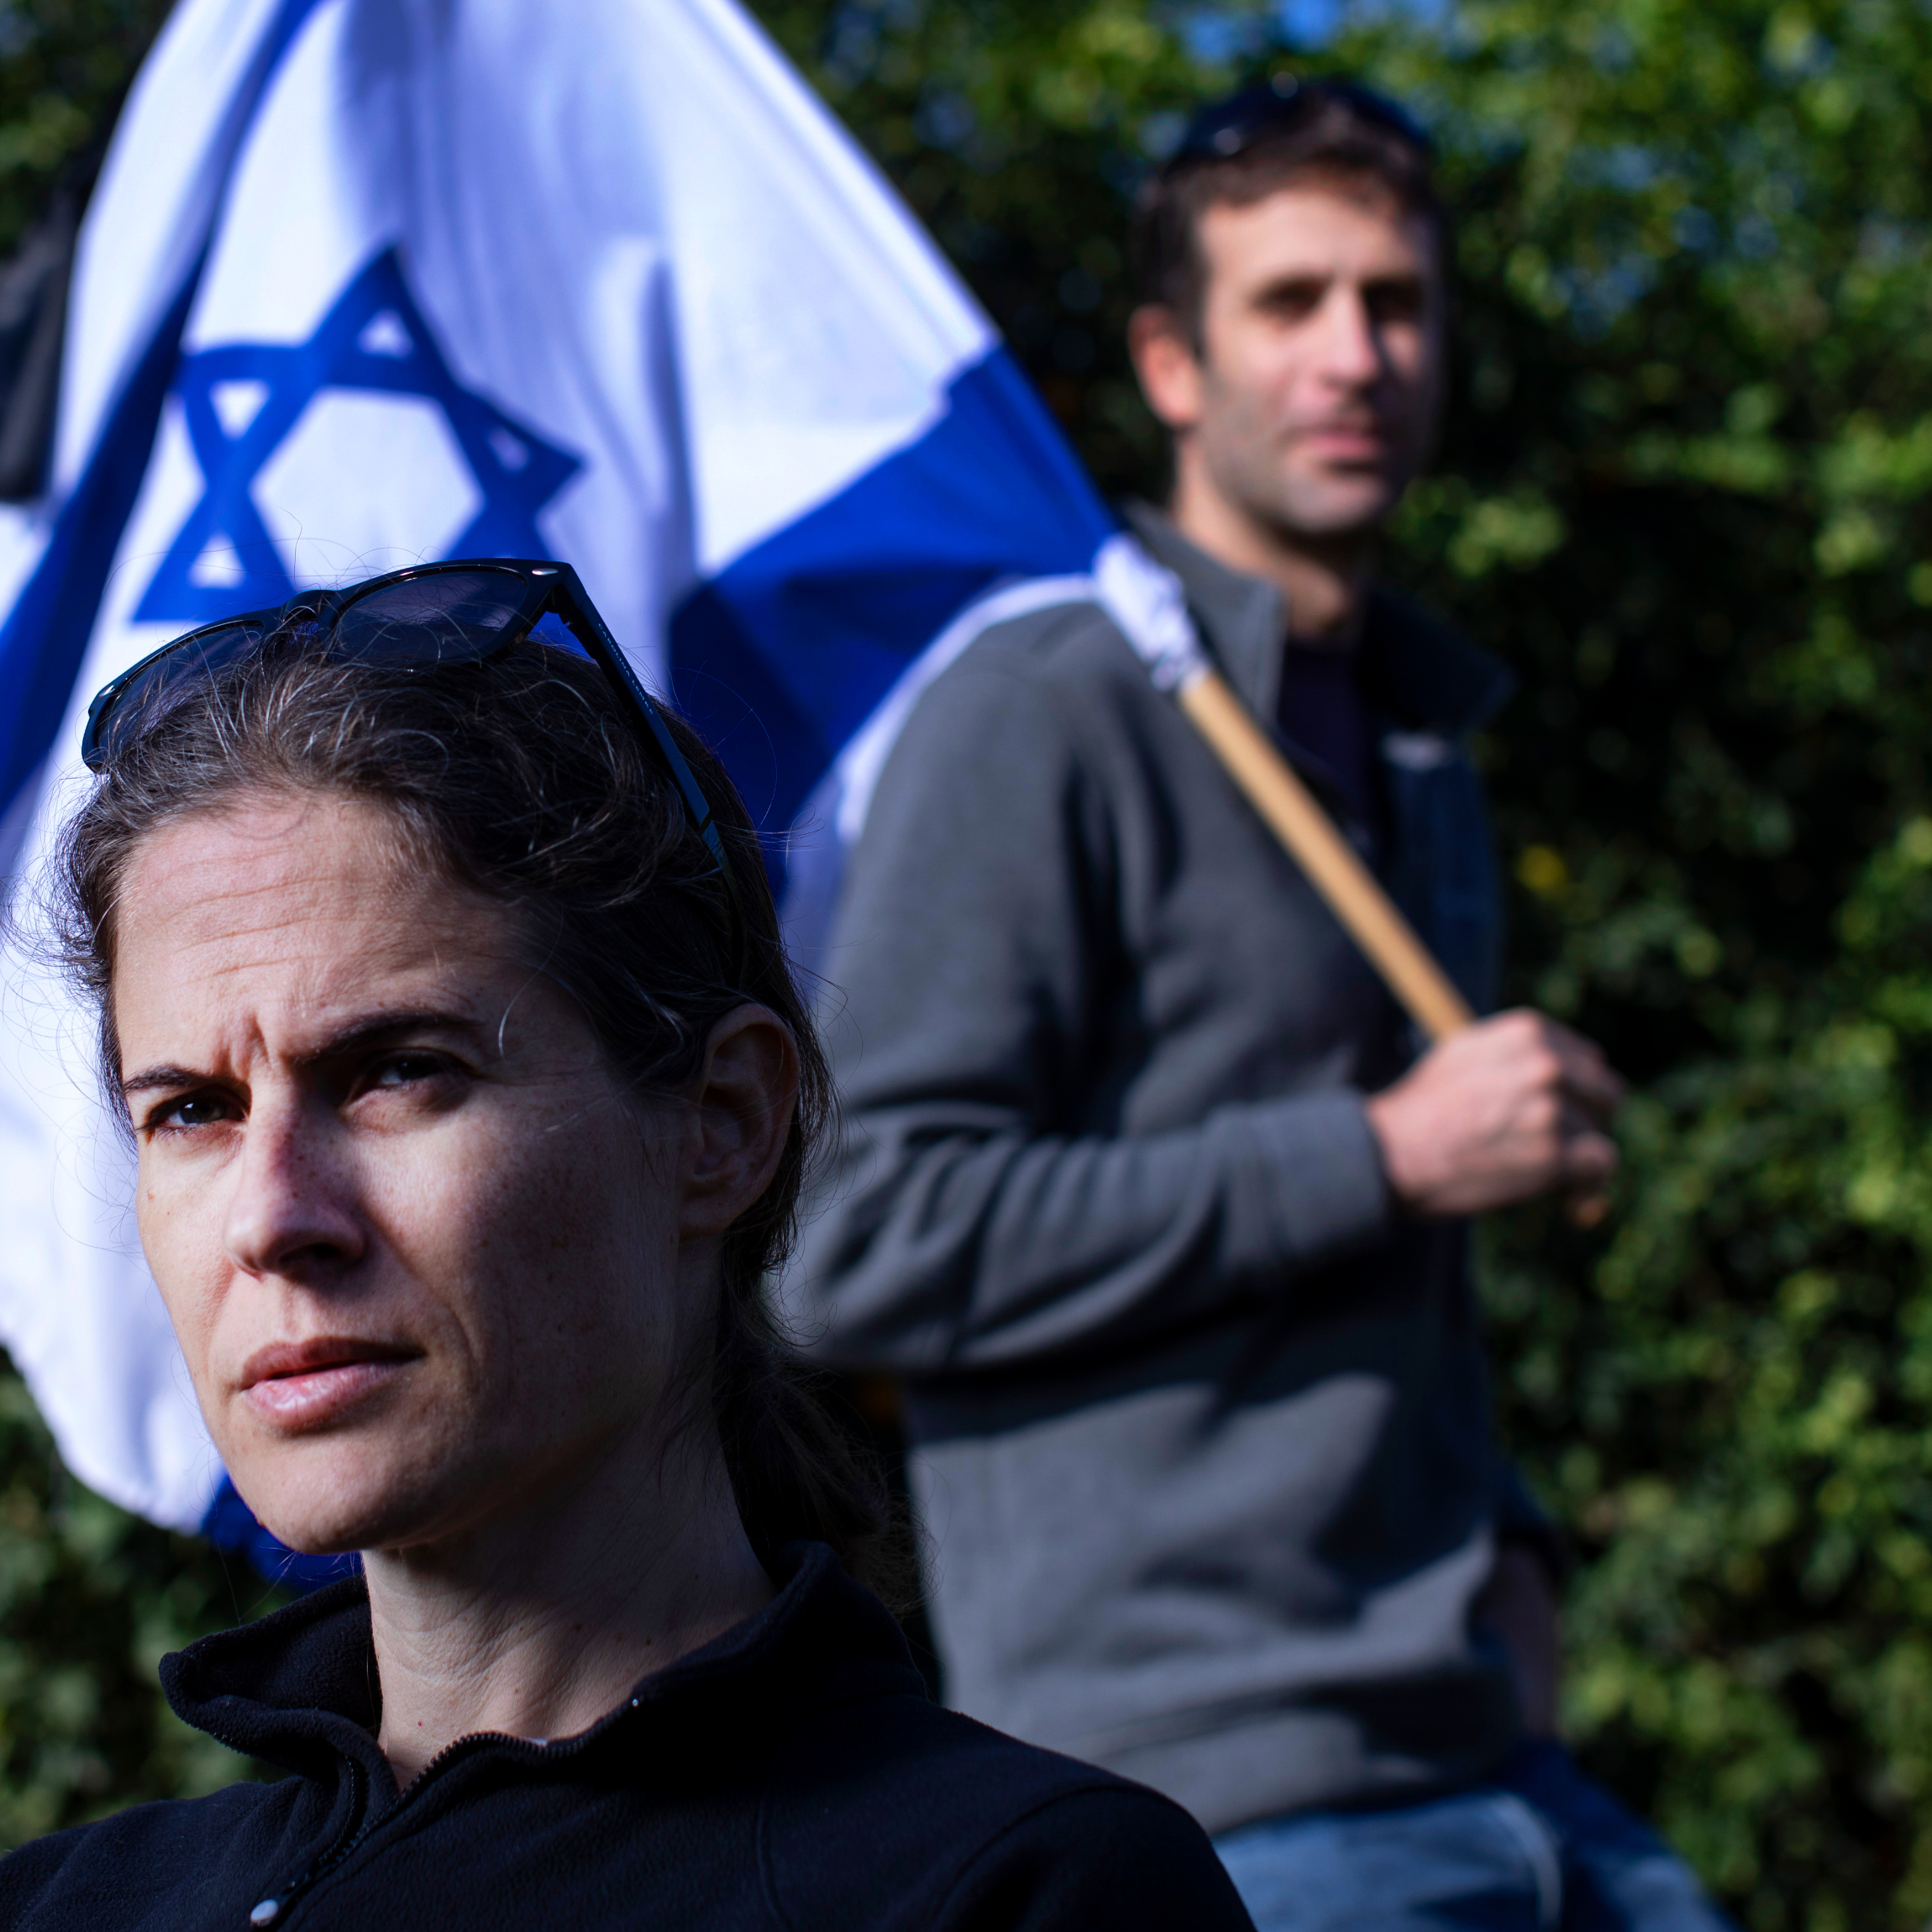 What Matters Now to arrested activist Shikma Bressler: 'Saving Israel'